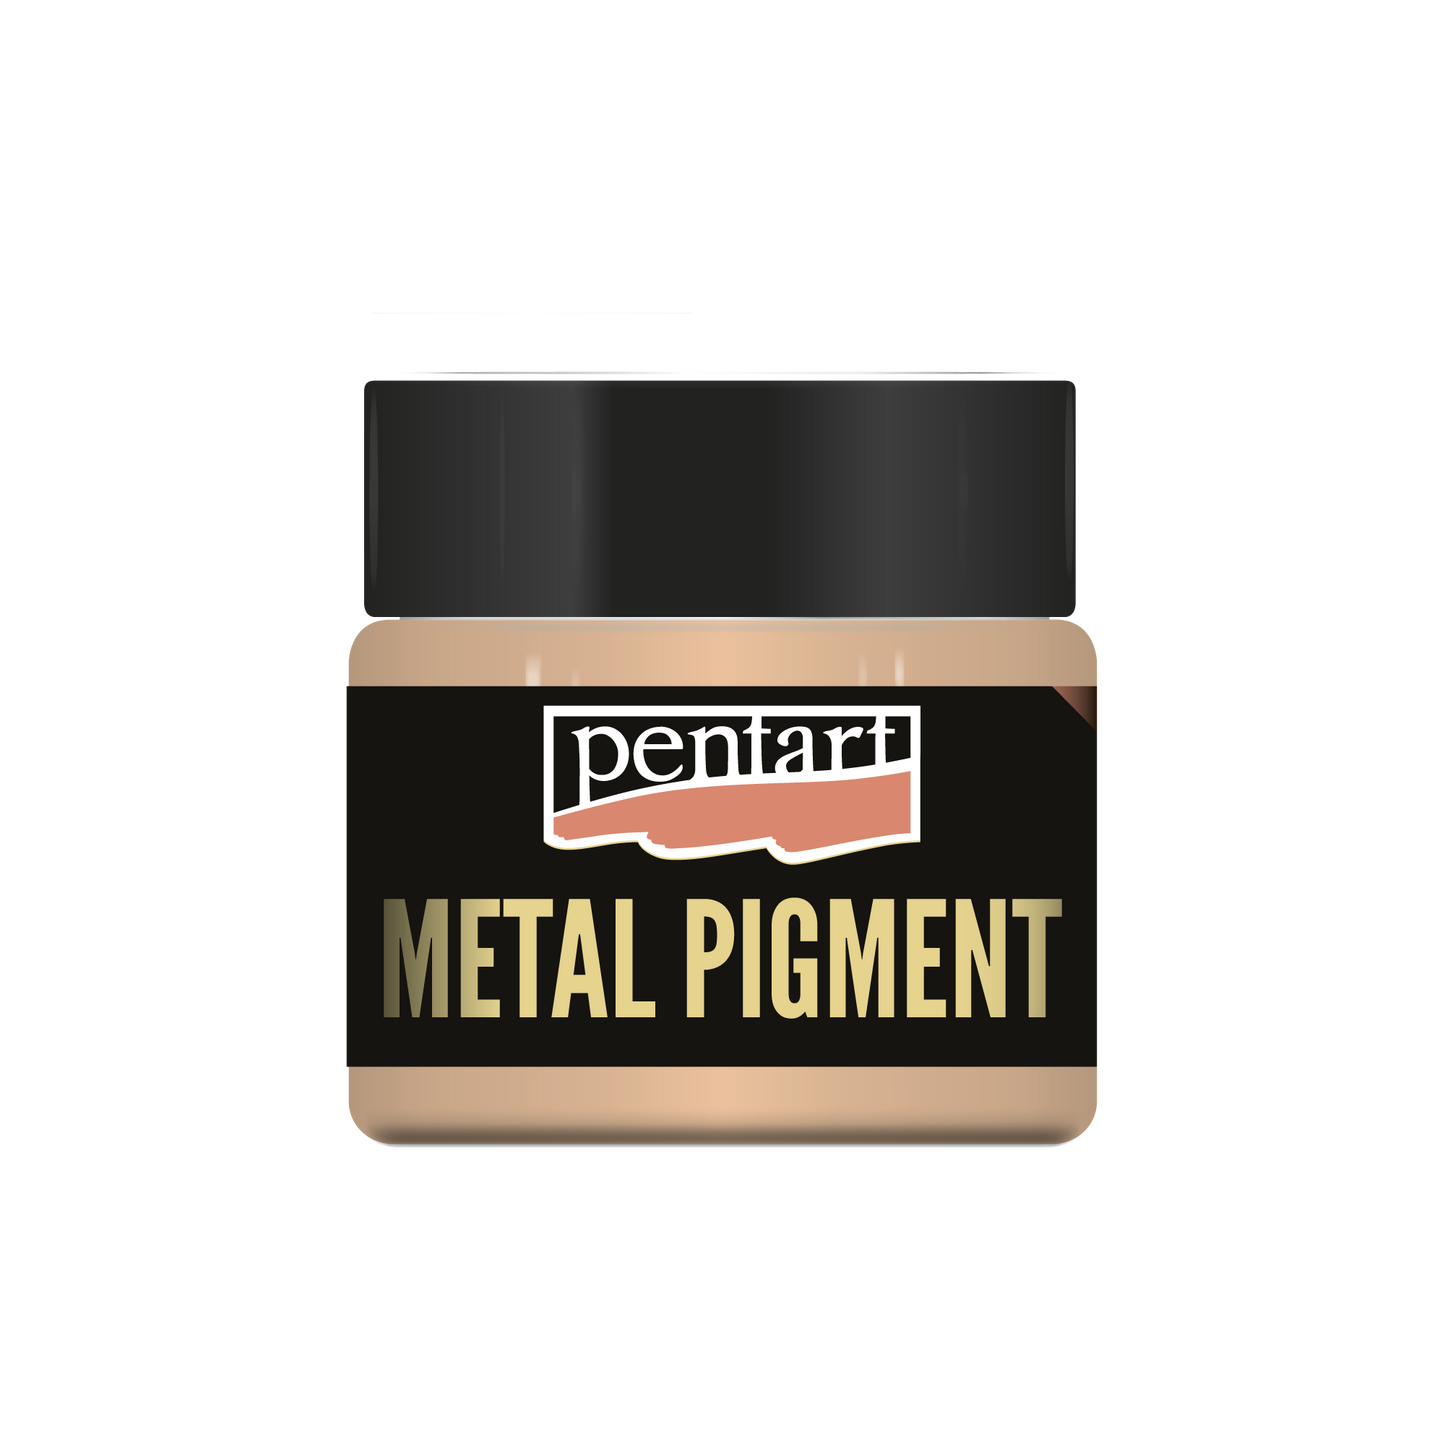 Pentart - Metal Pigment Powder